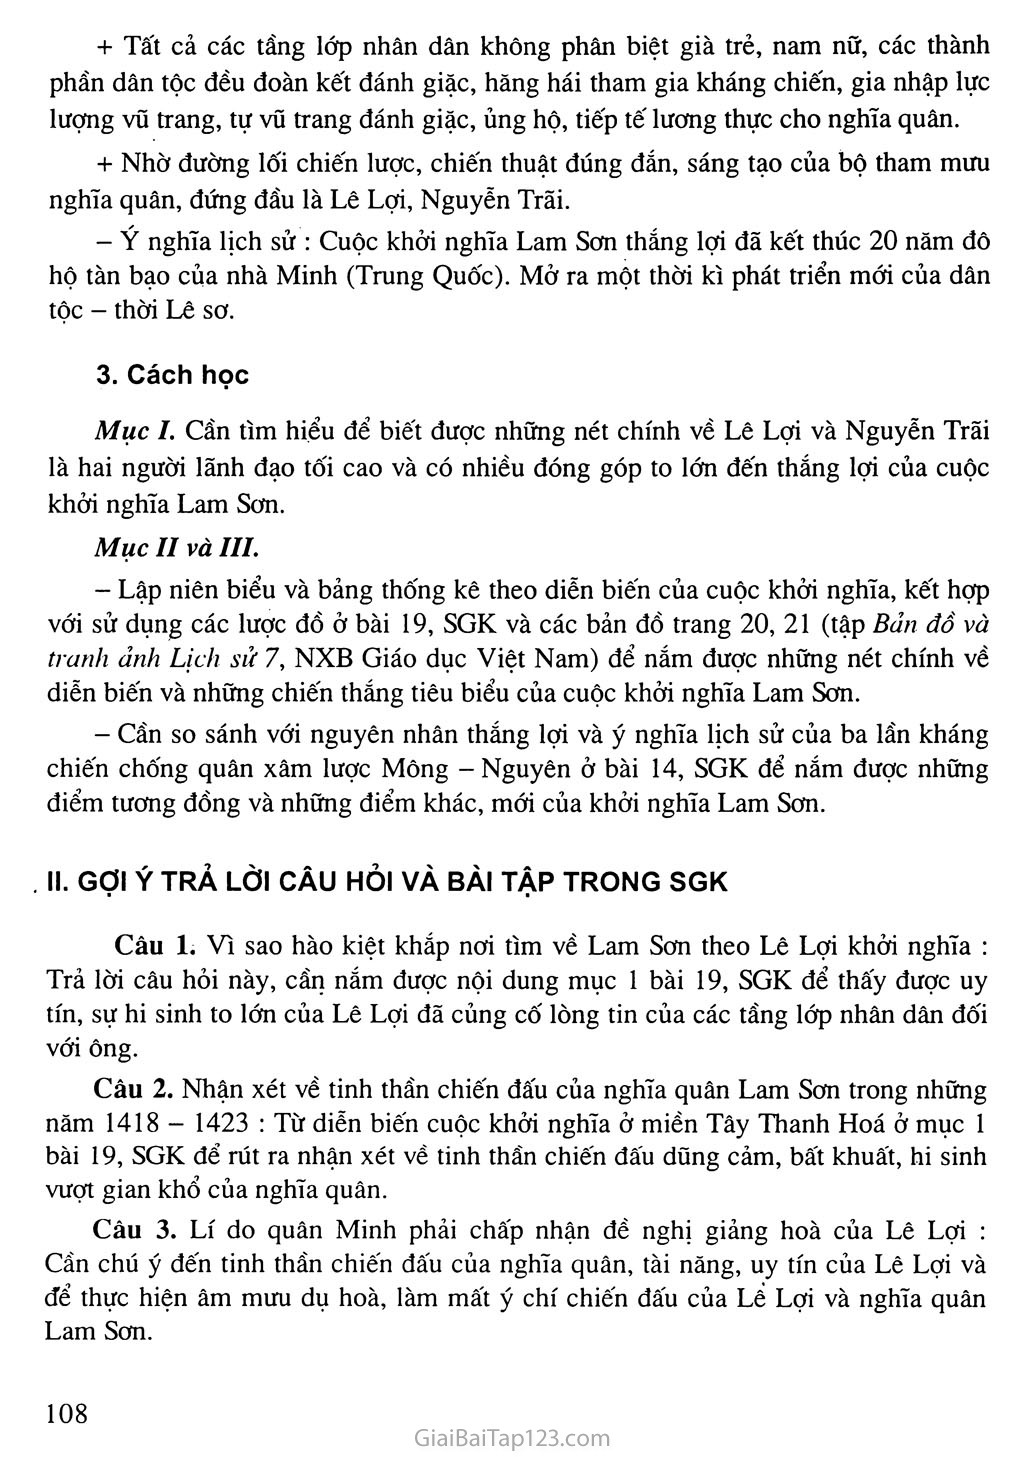 Bài 19: Cuộc khởi nghĩa Lam Sơn (1418 - 1427) trang 4